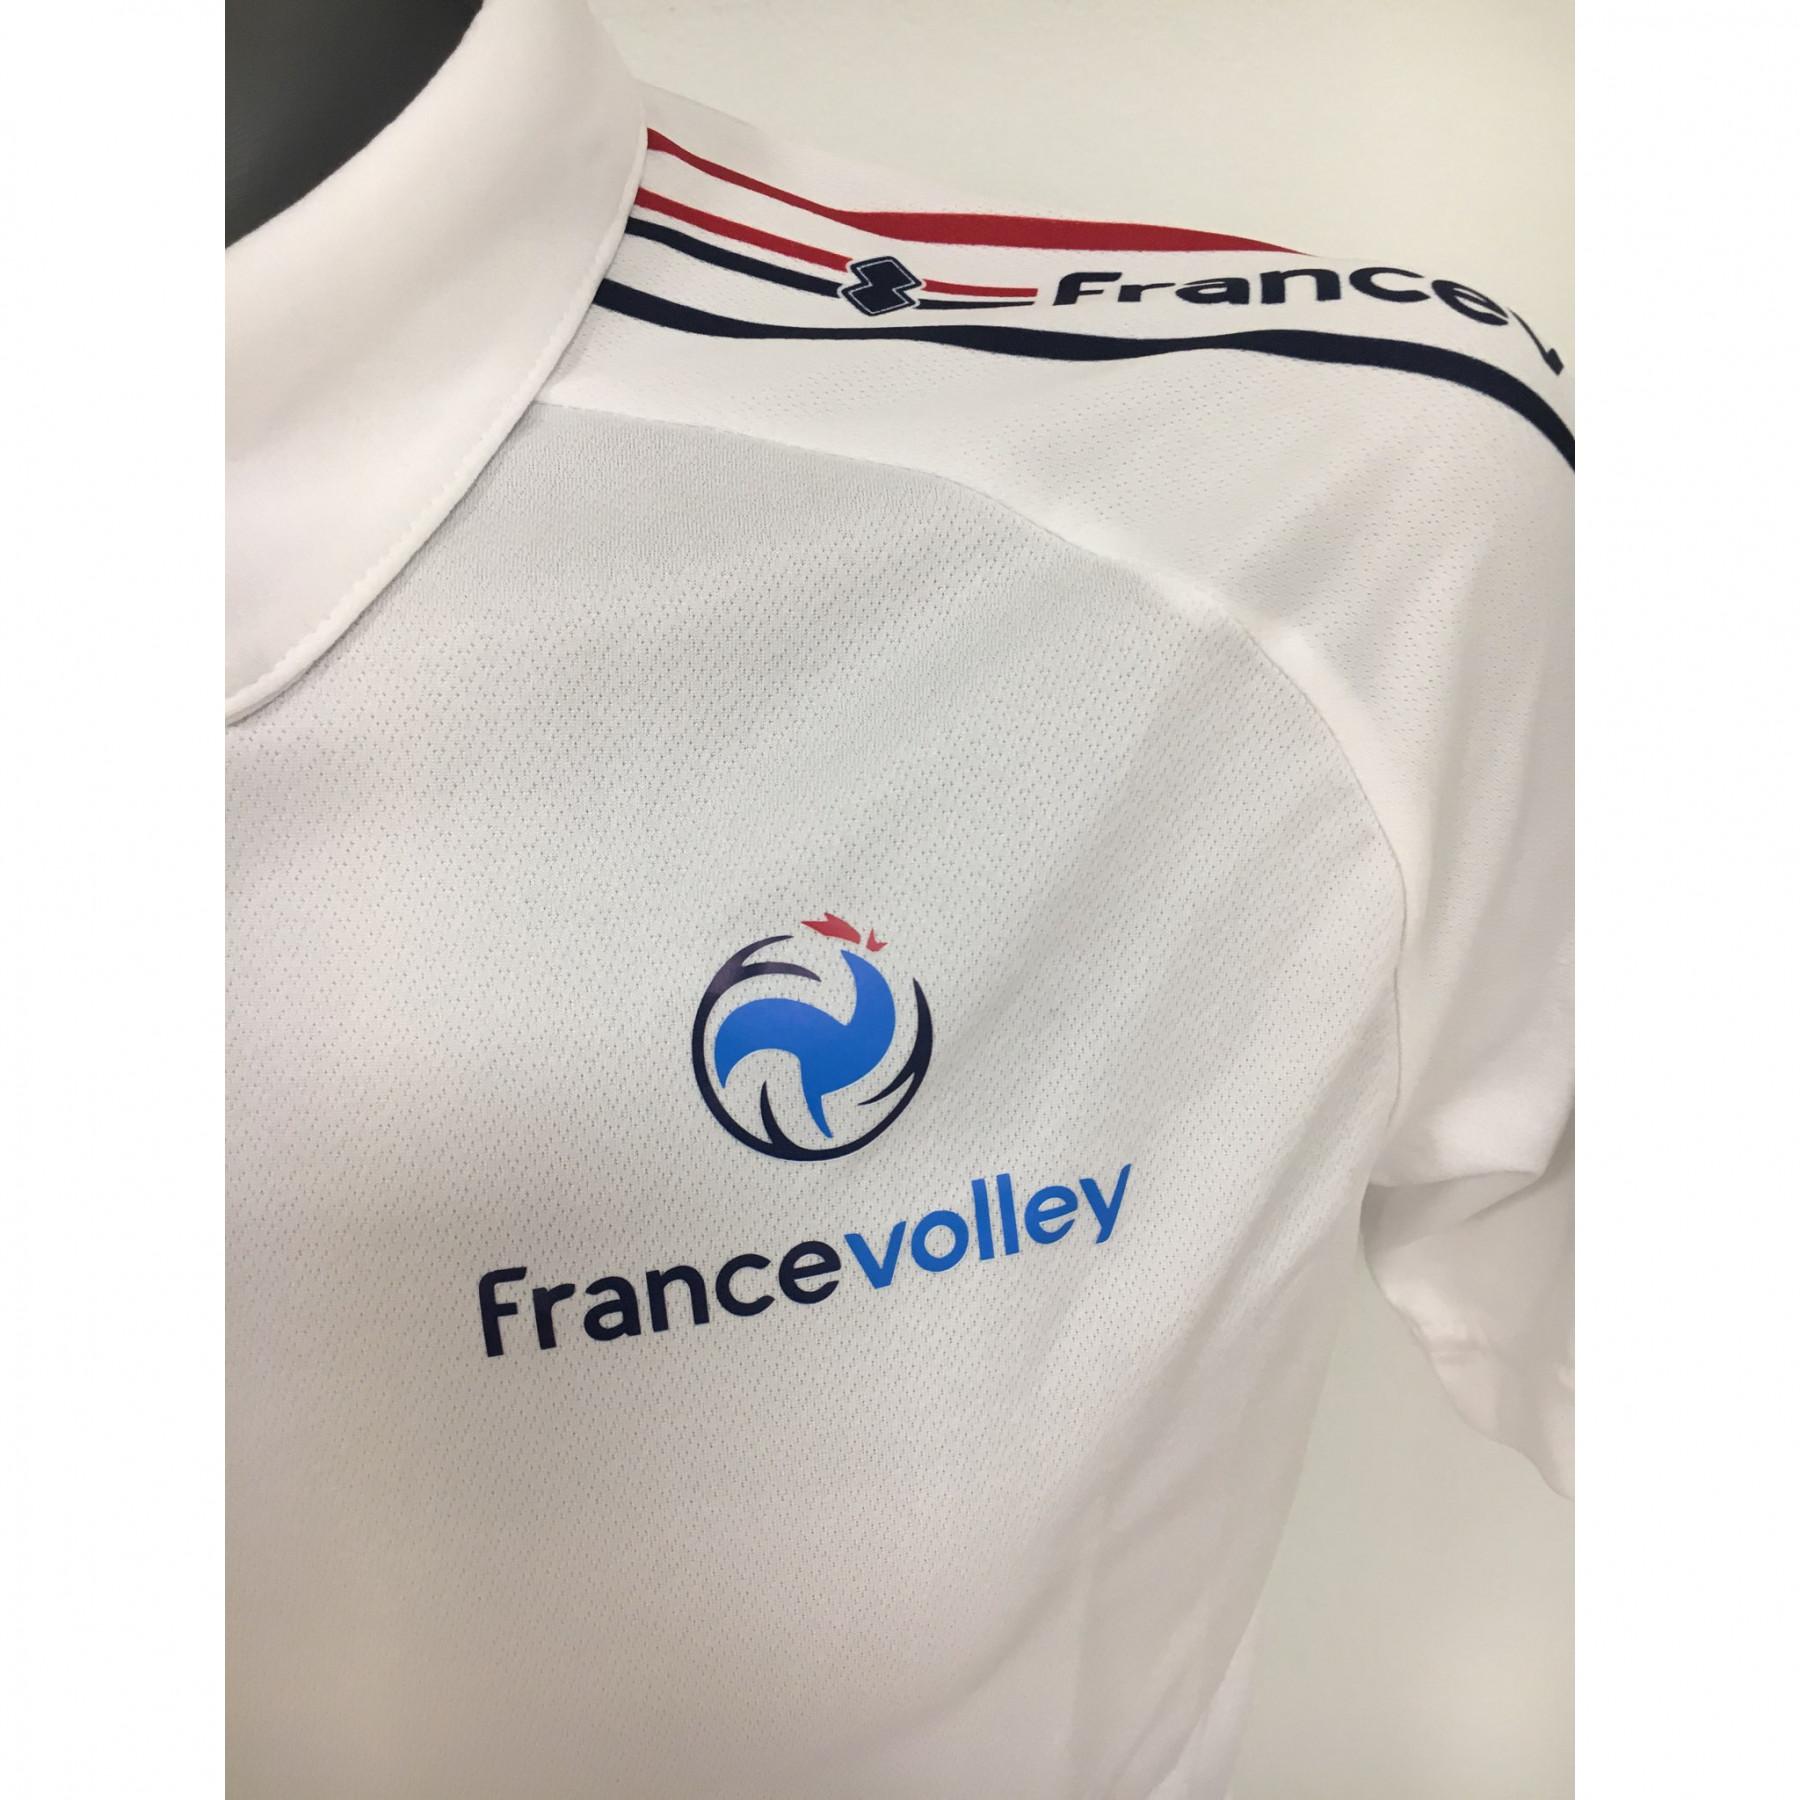 Polo shedir team av France 2020